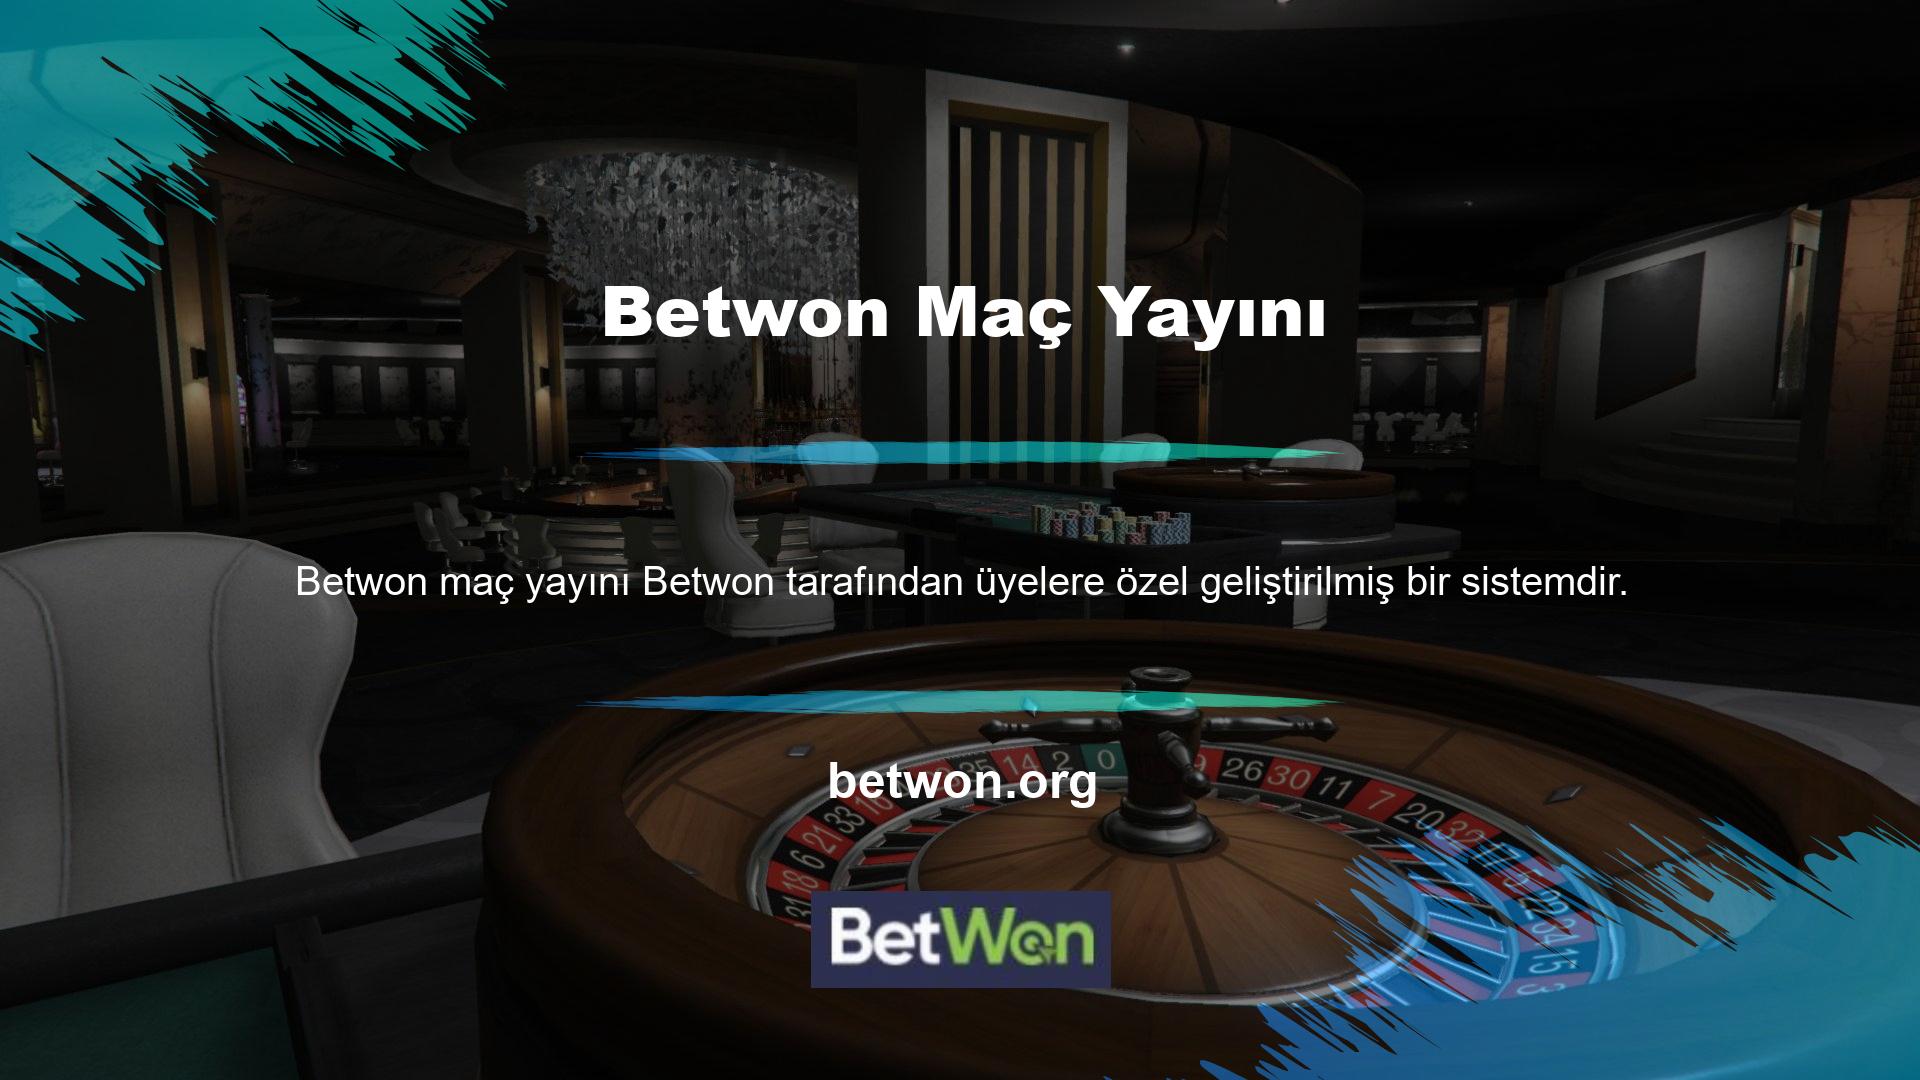 Betwon TV olarak adlandırılan sistem, üyelerin ödemeli TV platformları da dahil olmak üzere birden fazla platformdan kanalları ücretsiz olarak izlemelerine olanak tanıyor